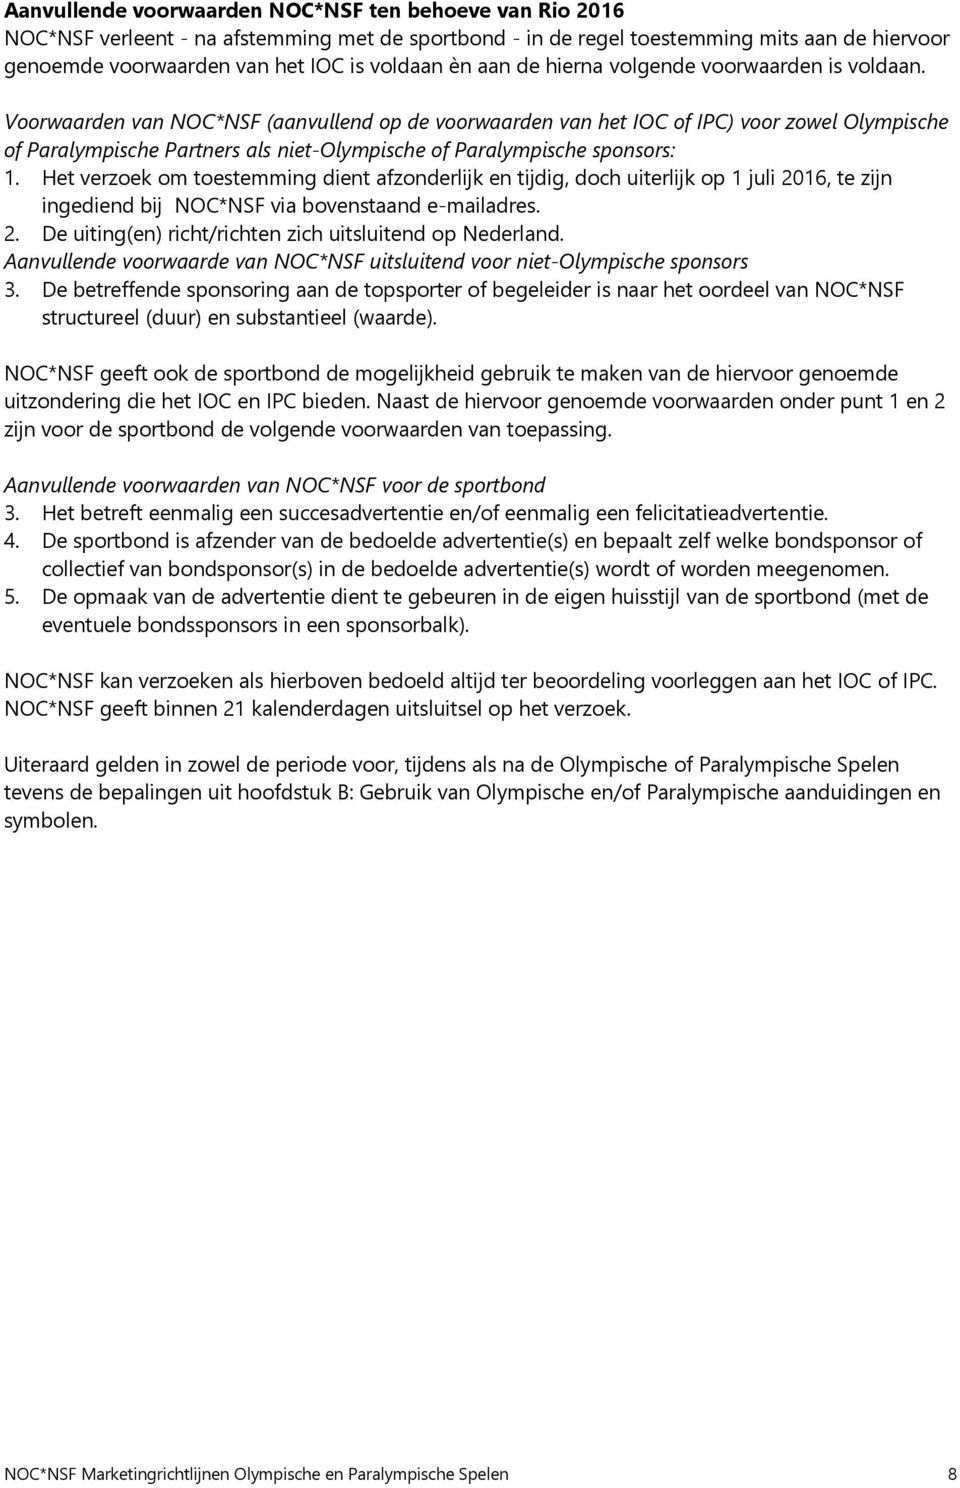 Voorwaarden van NOC*NSF (aanvullend op de voorwaarden van het IOC of IPC) voor zowel Olympische of Paralympische Partners als niet-olympische of Paralympische sponsors: 1.